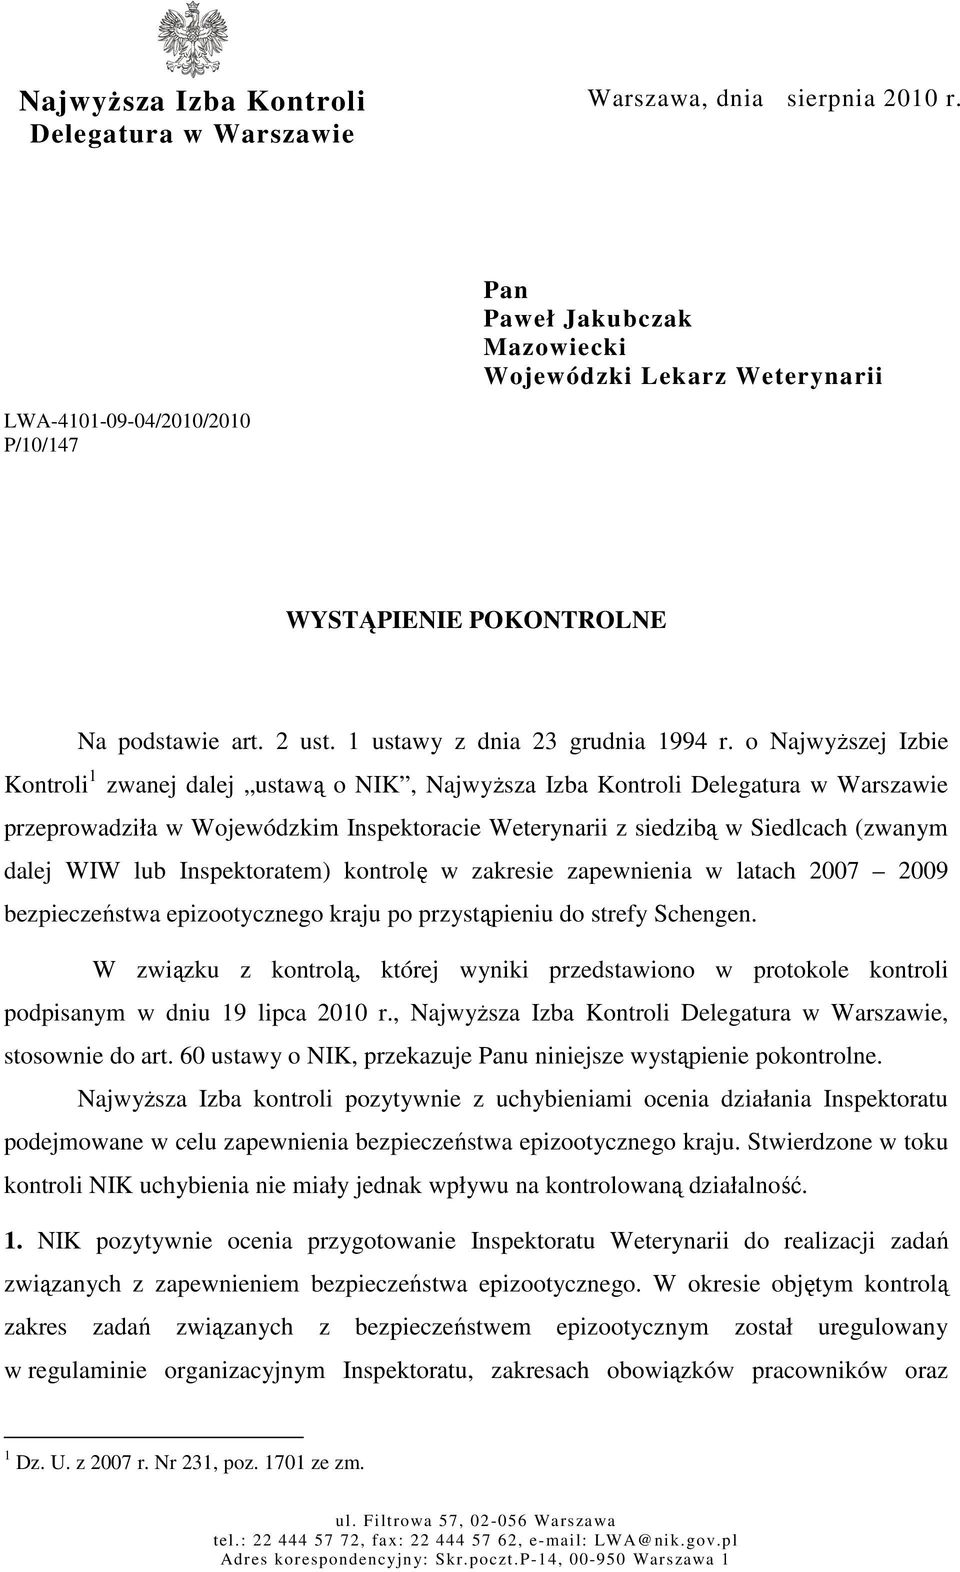 o NajwyŜszej Izbie Kontroli 1 zwanej dalej ustawą o NIK, NajwyŜsza Izba Kontroli Delegatura w Warszawie przeprowadziła w Wojewódzkim Inspektoracie Weterynarii z siedzibą w Siedlcach (zwanym dalej WIW